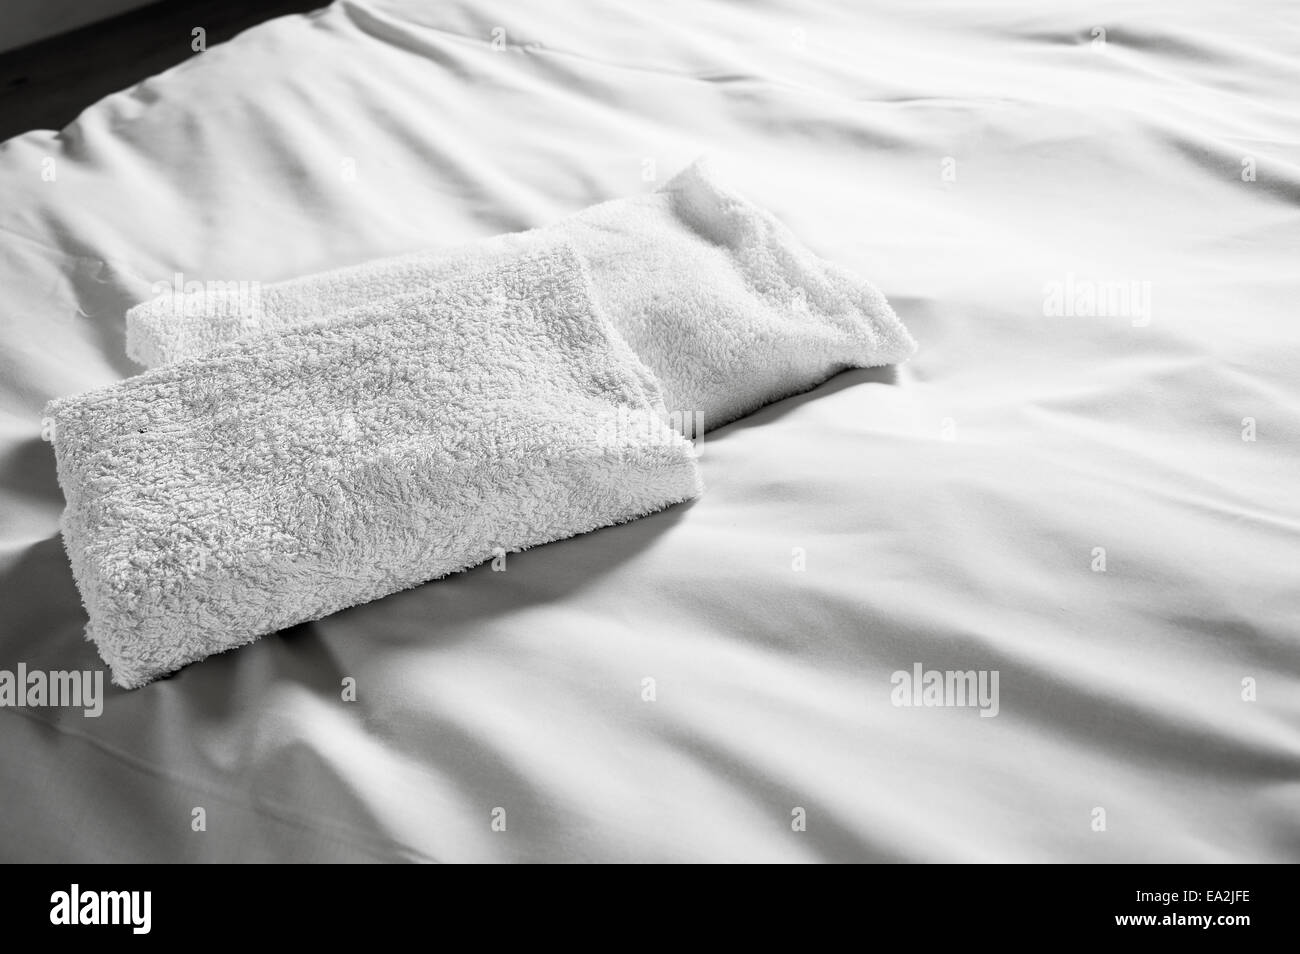 White hotel asciugamani sul letto bianco. Immagine in bianco e nero. Foto Stock